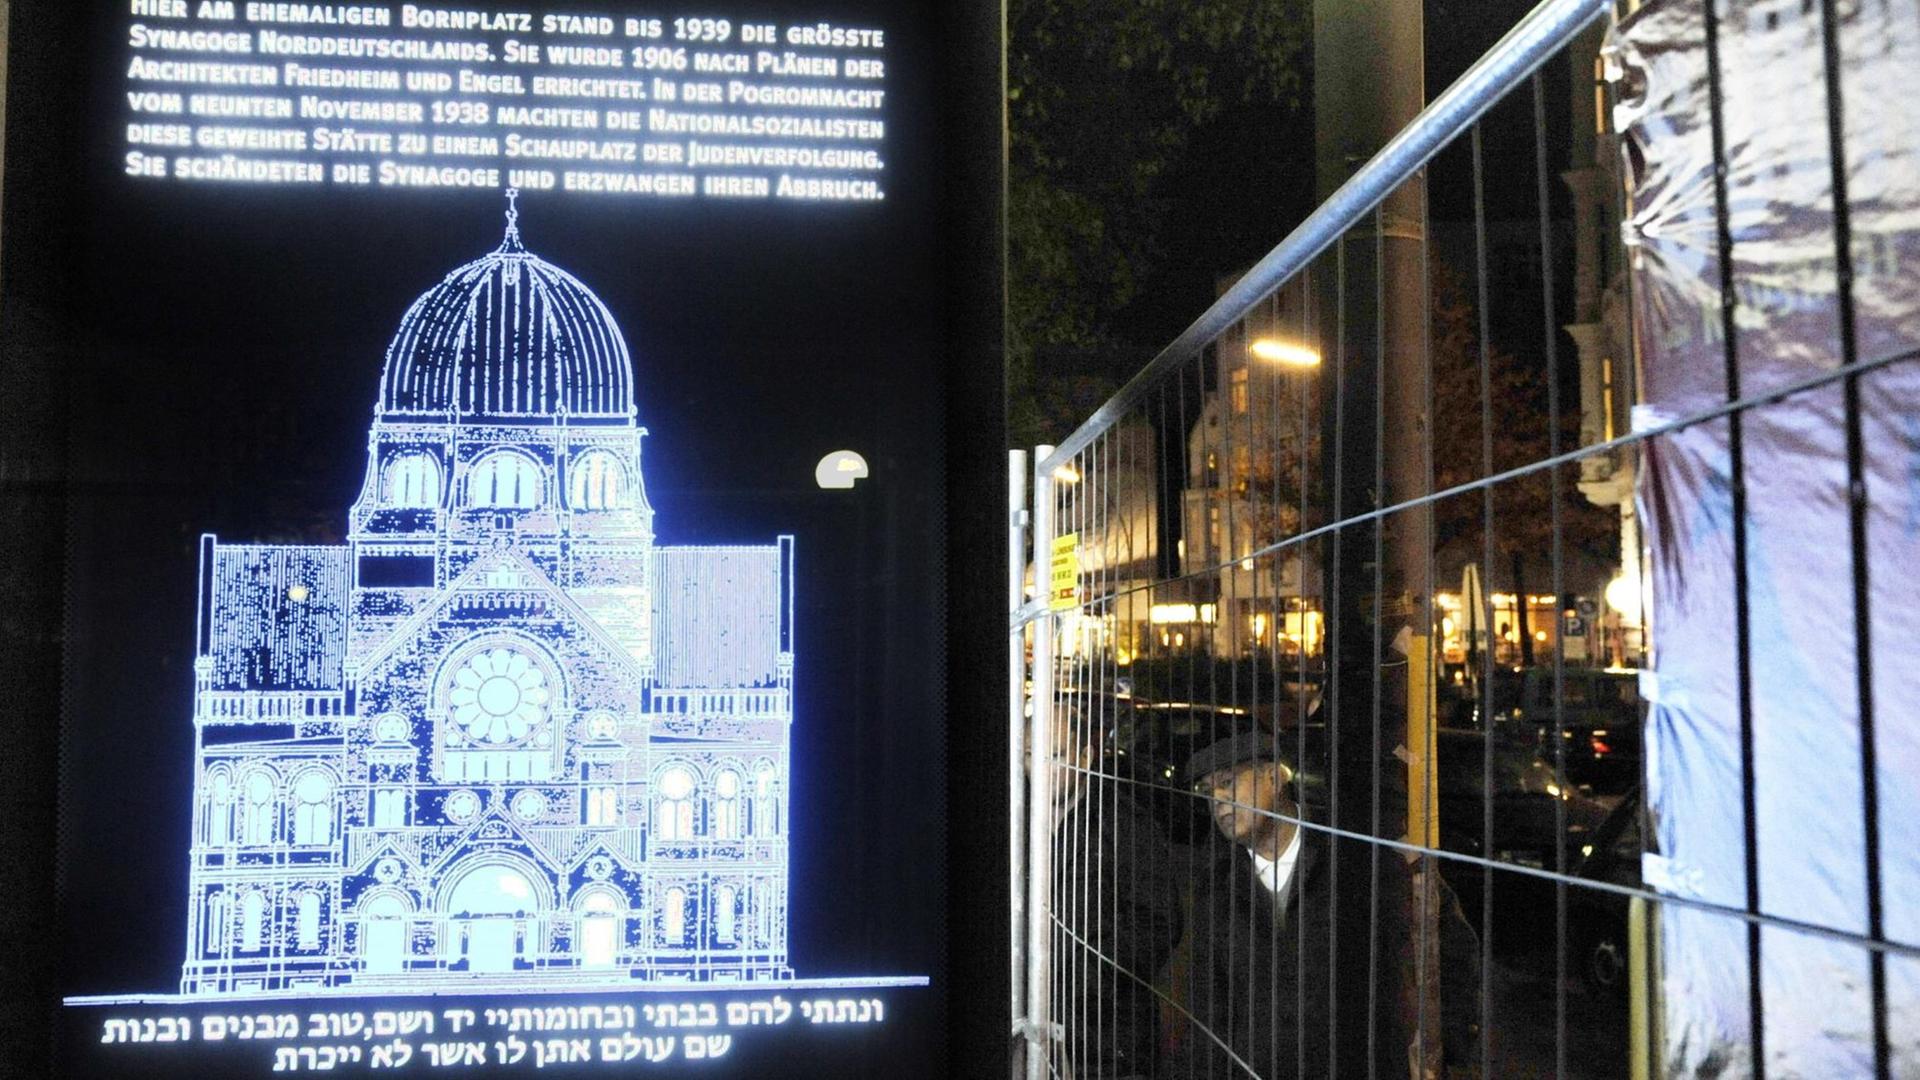 Eine Lichtinstallation vom November 2018 erinnert an die von den Nazis zerstörte Synagoge am früheren Bornplatz in Hamburg